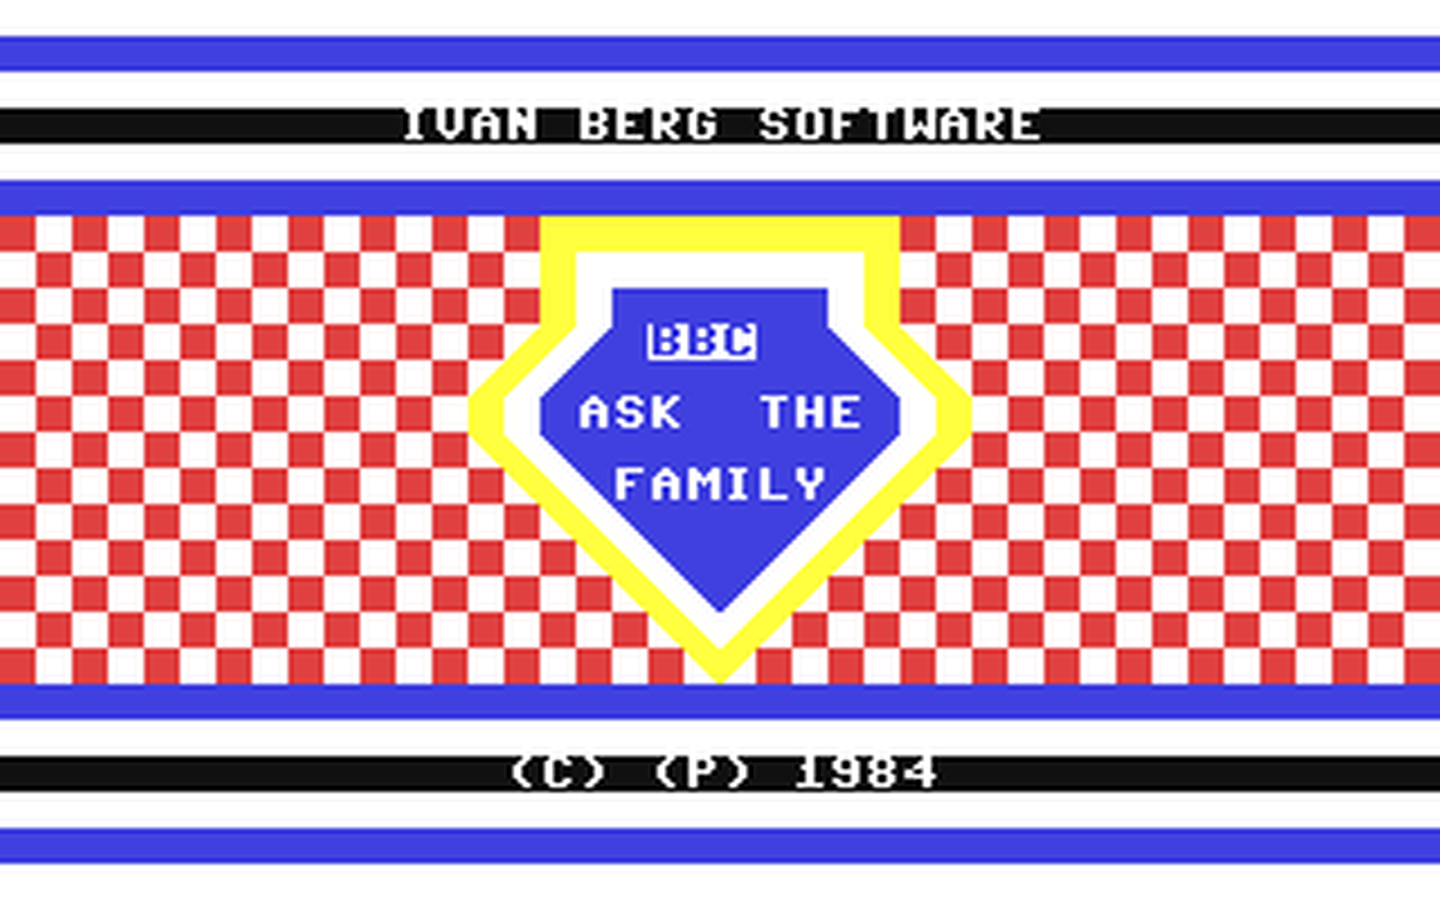 C64 GameBase BBC_Ask_the_Family Ivan_Berg_Software_Ltd. 1984